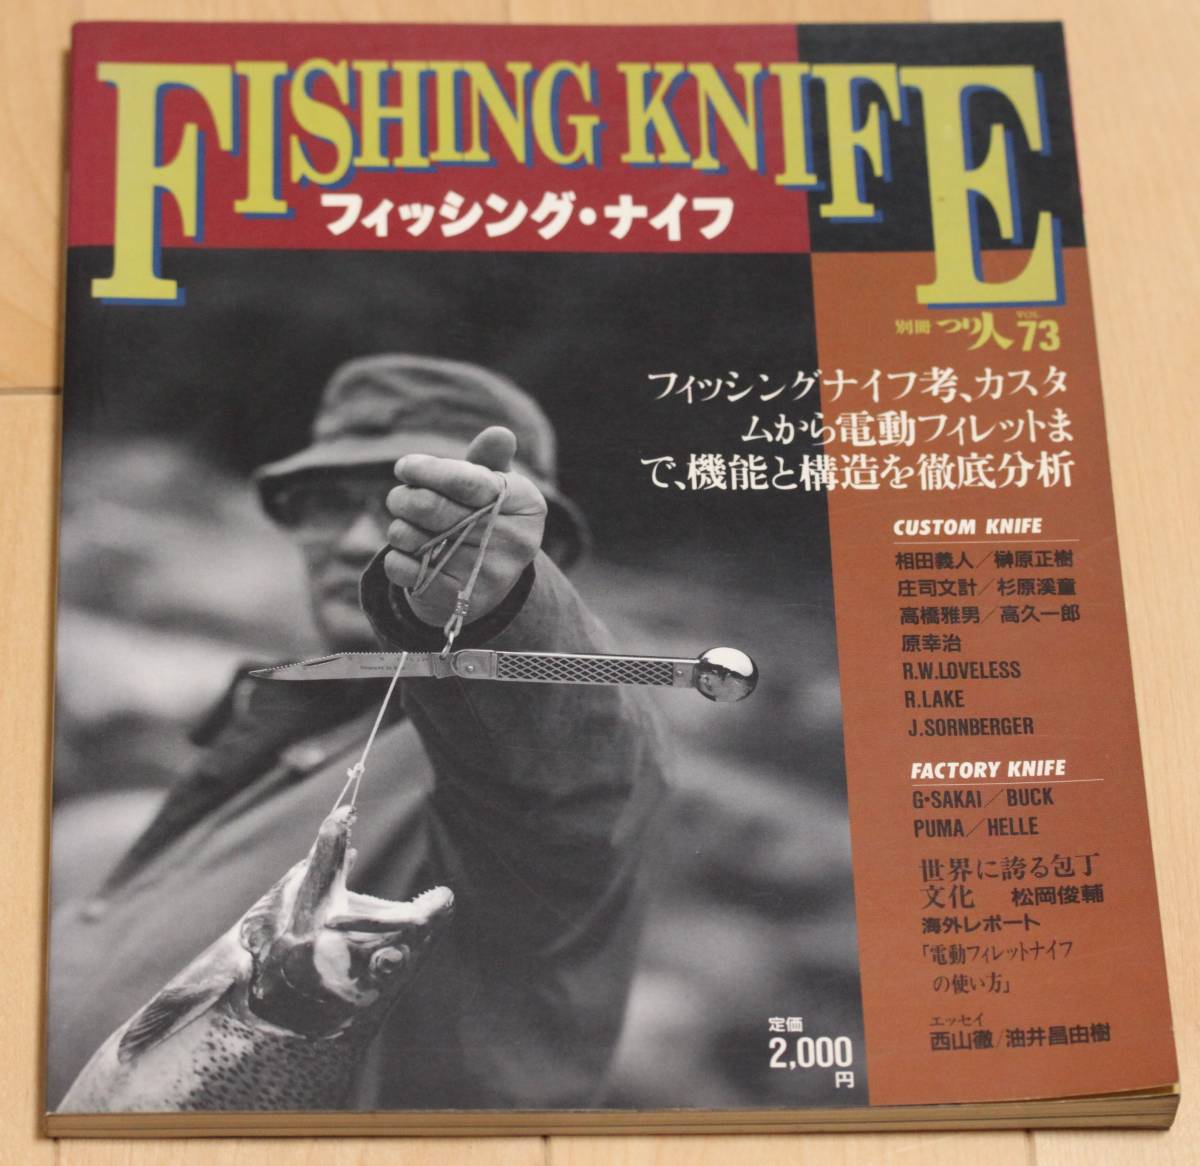 * брошюра рыбалка * нож отдельный выпуск .. человек vol.73*